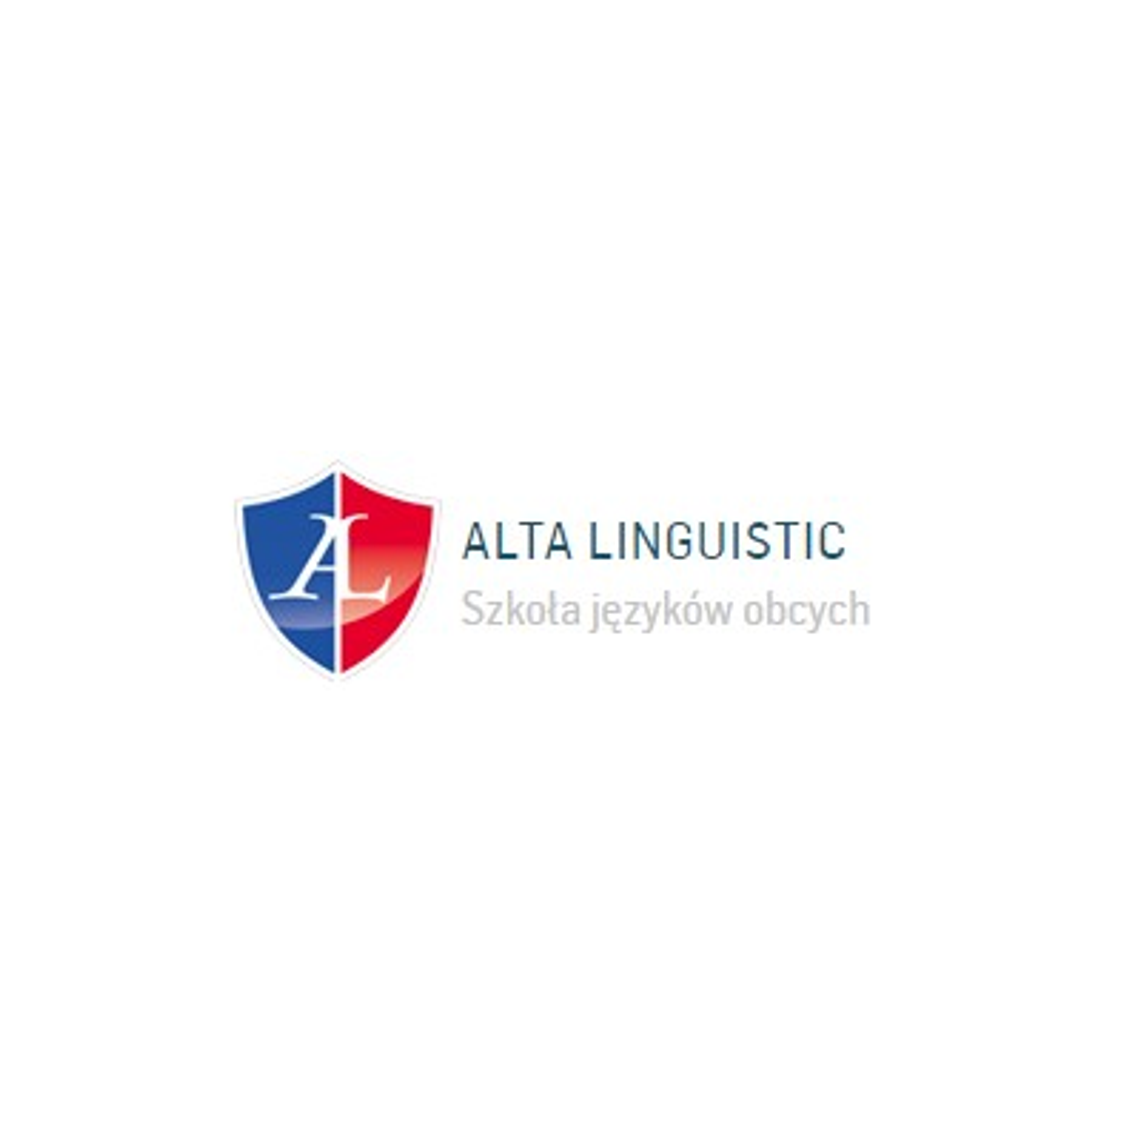 Alta Linguistic